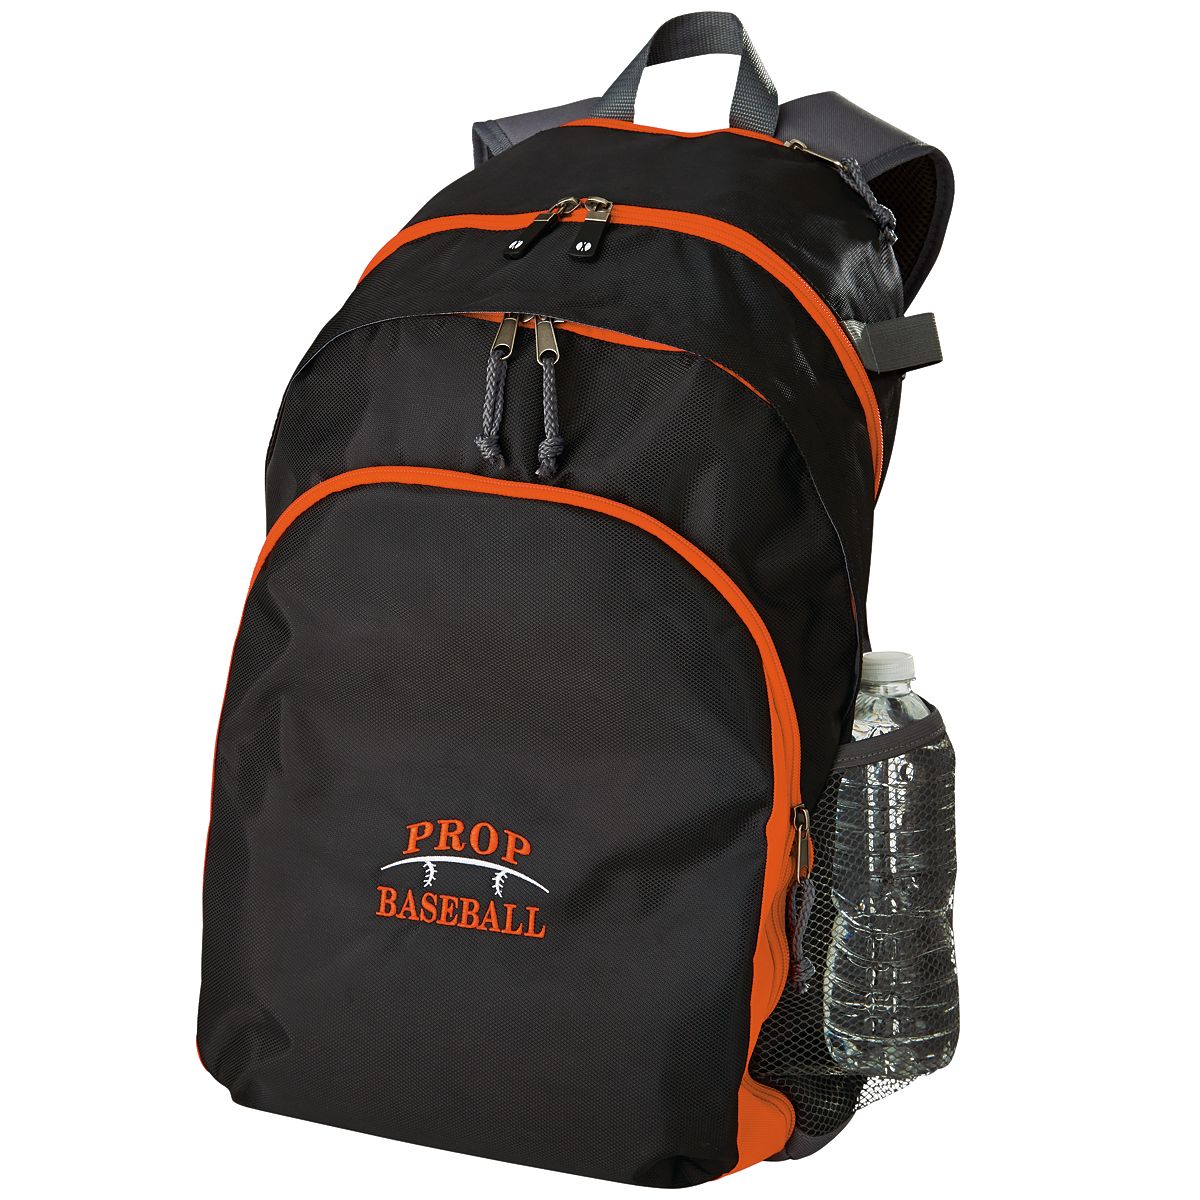 Prop Backpack